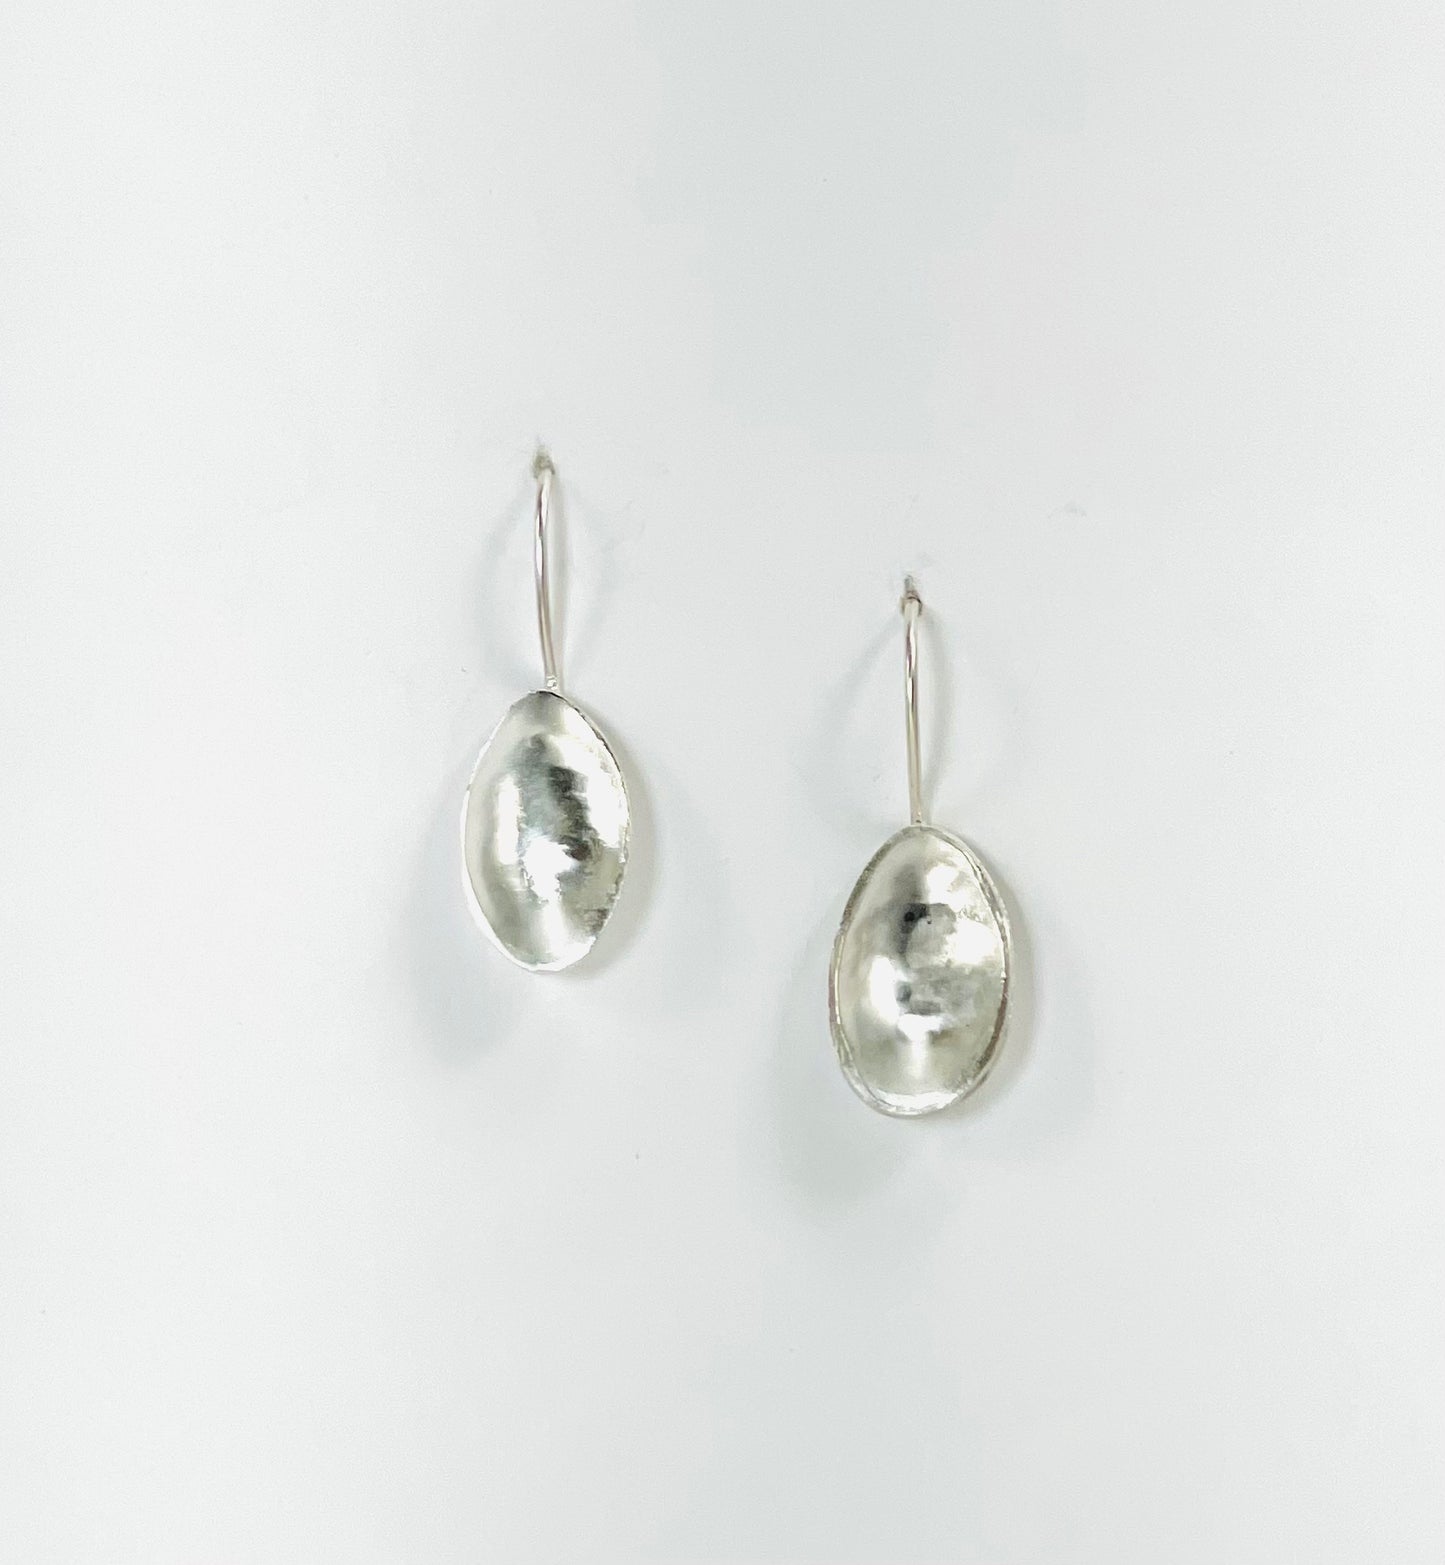 Silver 'pod' earrings